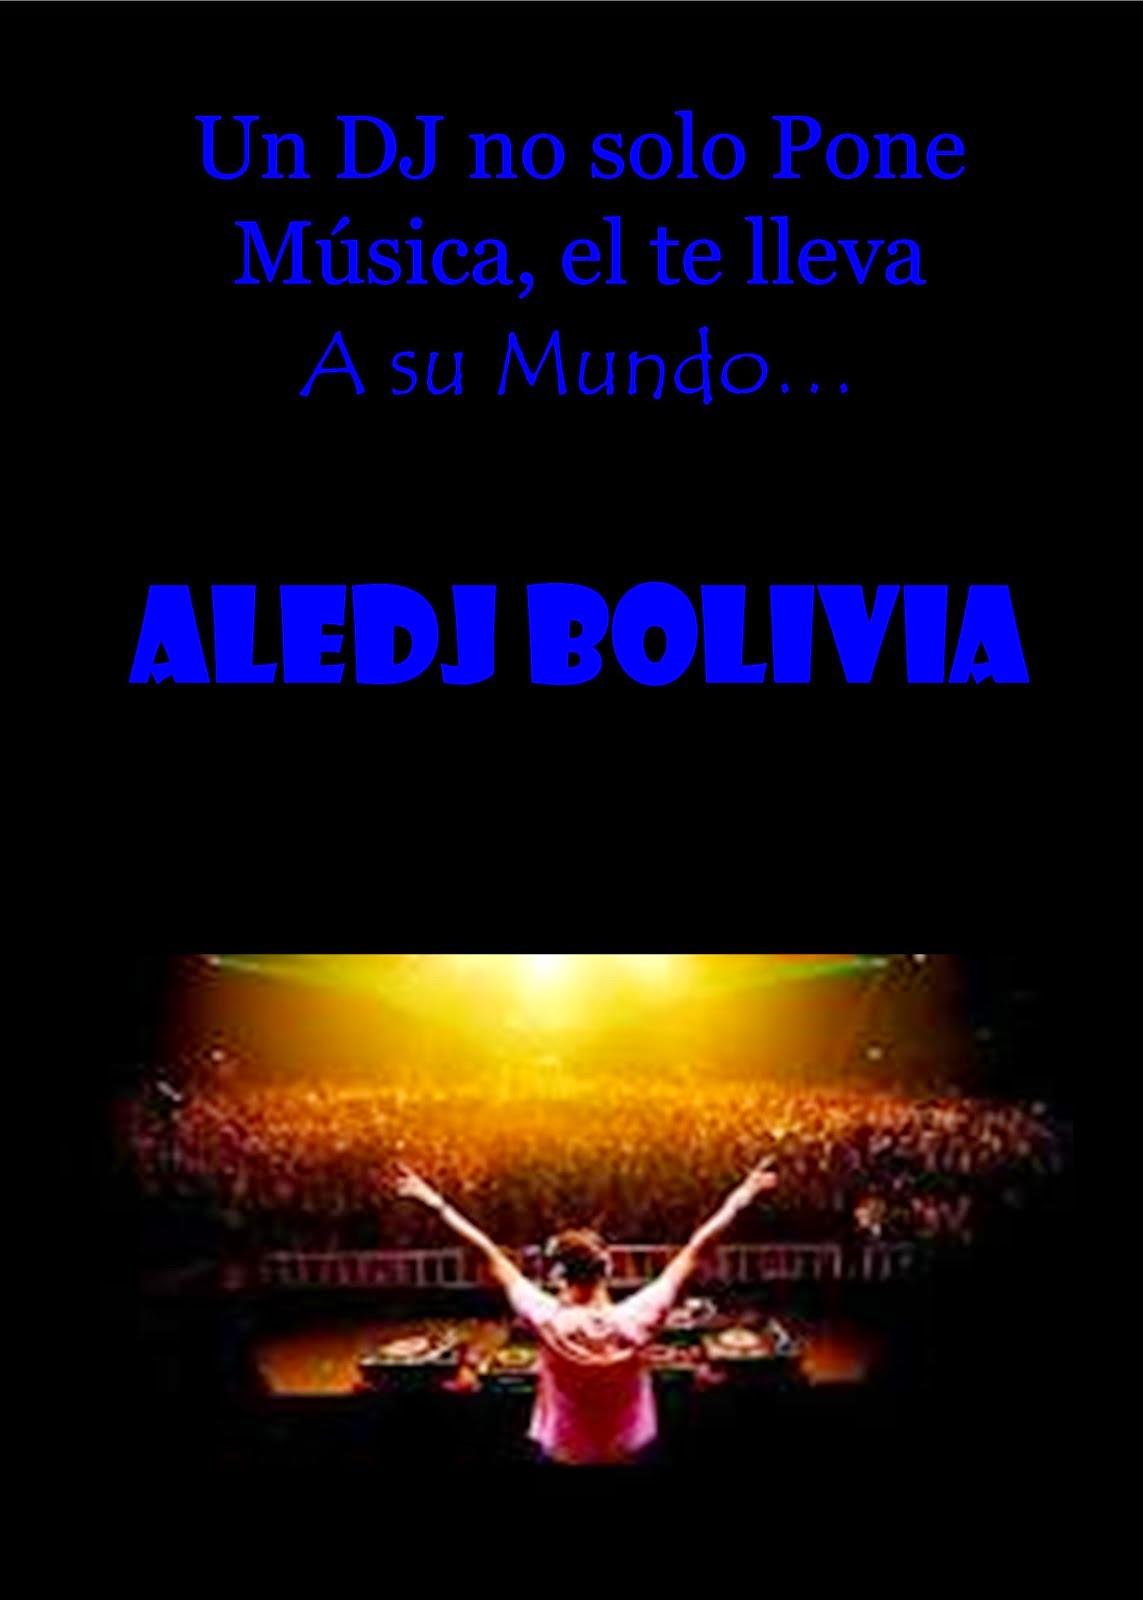 ALEDJ - BOLIVIA